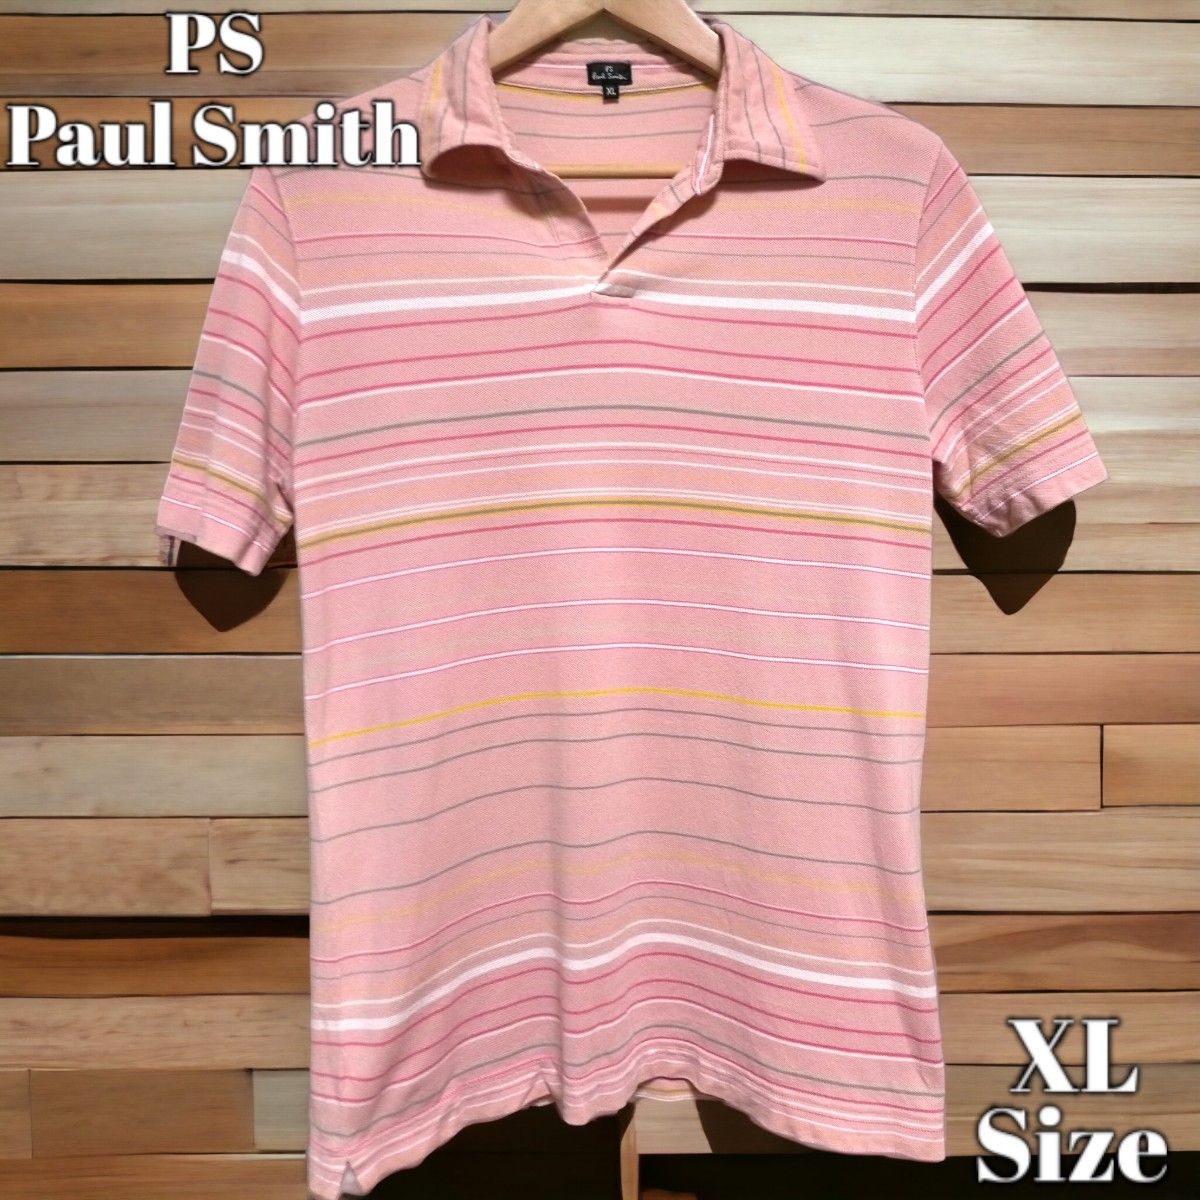 PS Paul Smith マルチストライプ ピンク ポロシャツ XLサイズ ボーダー 半袖ポロシャツ